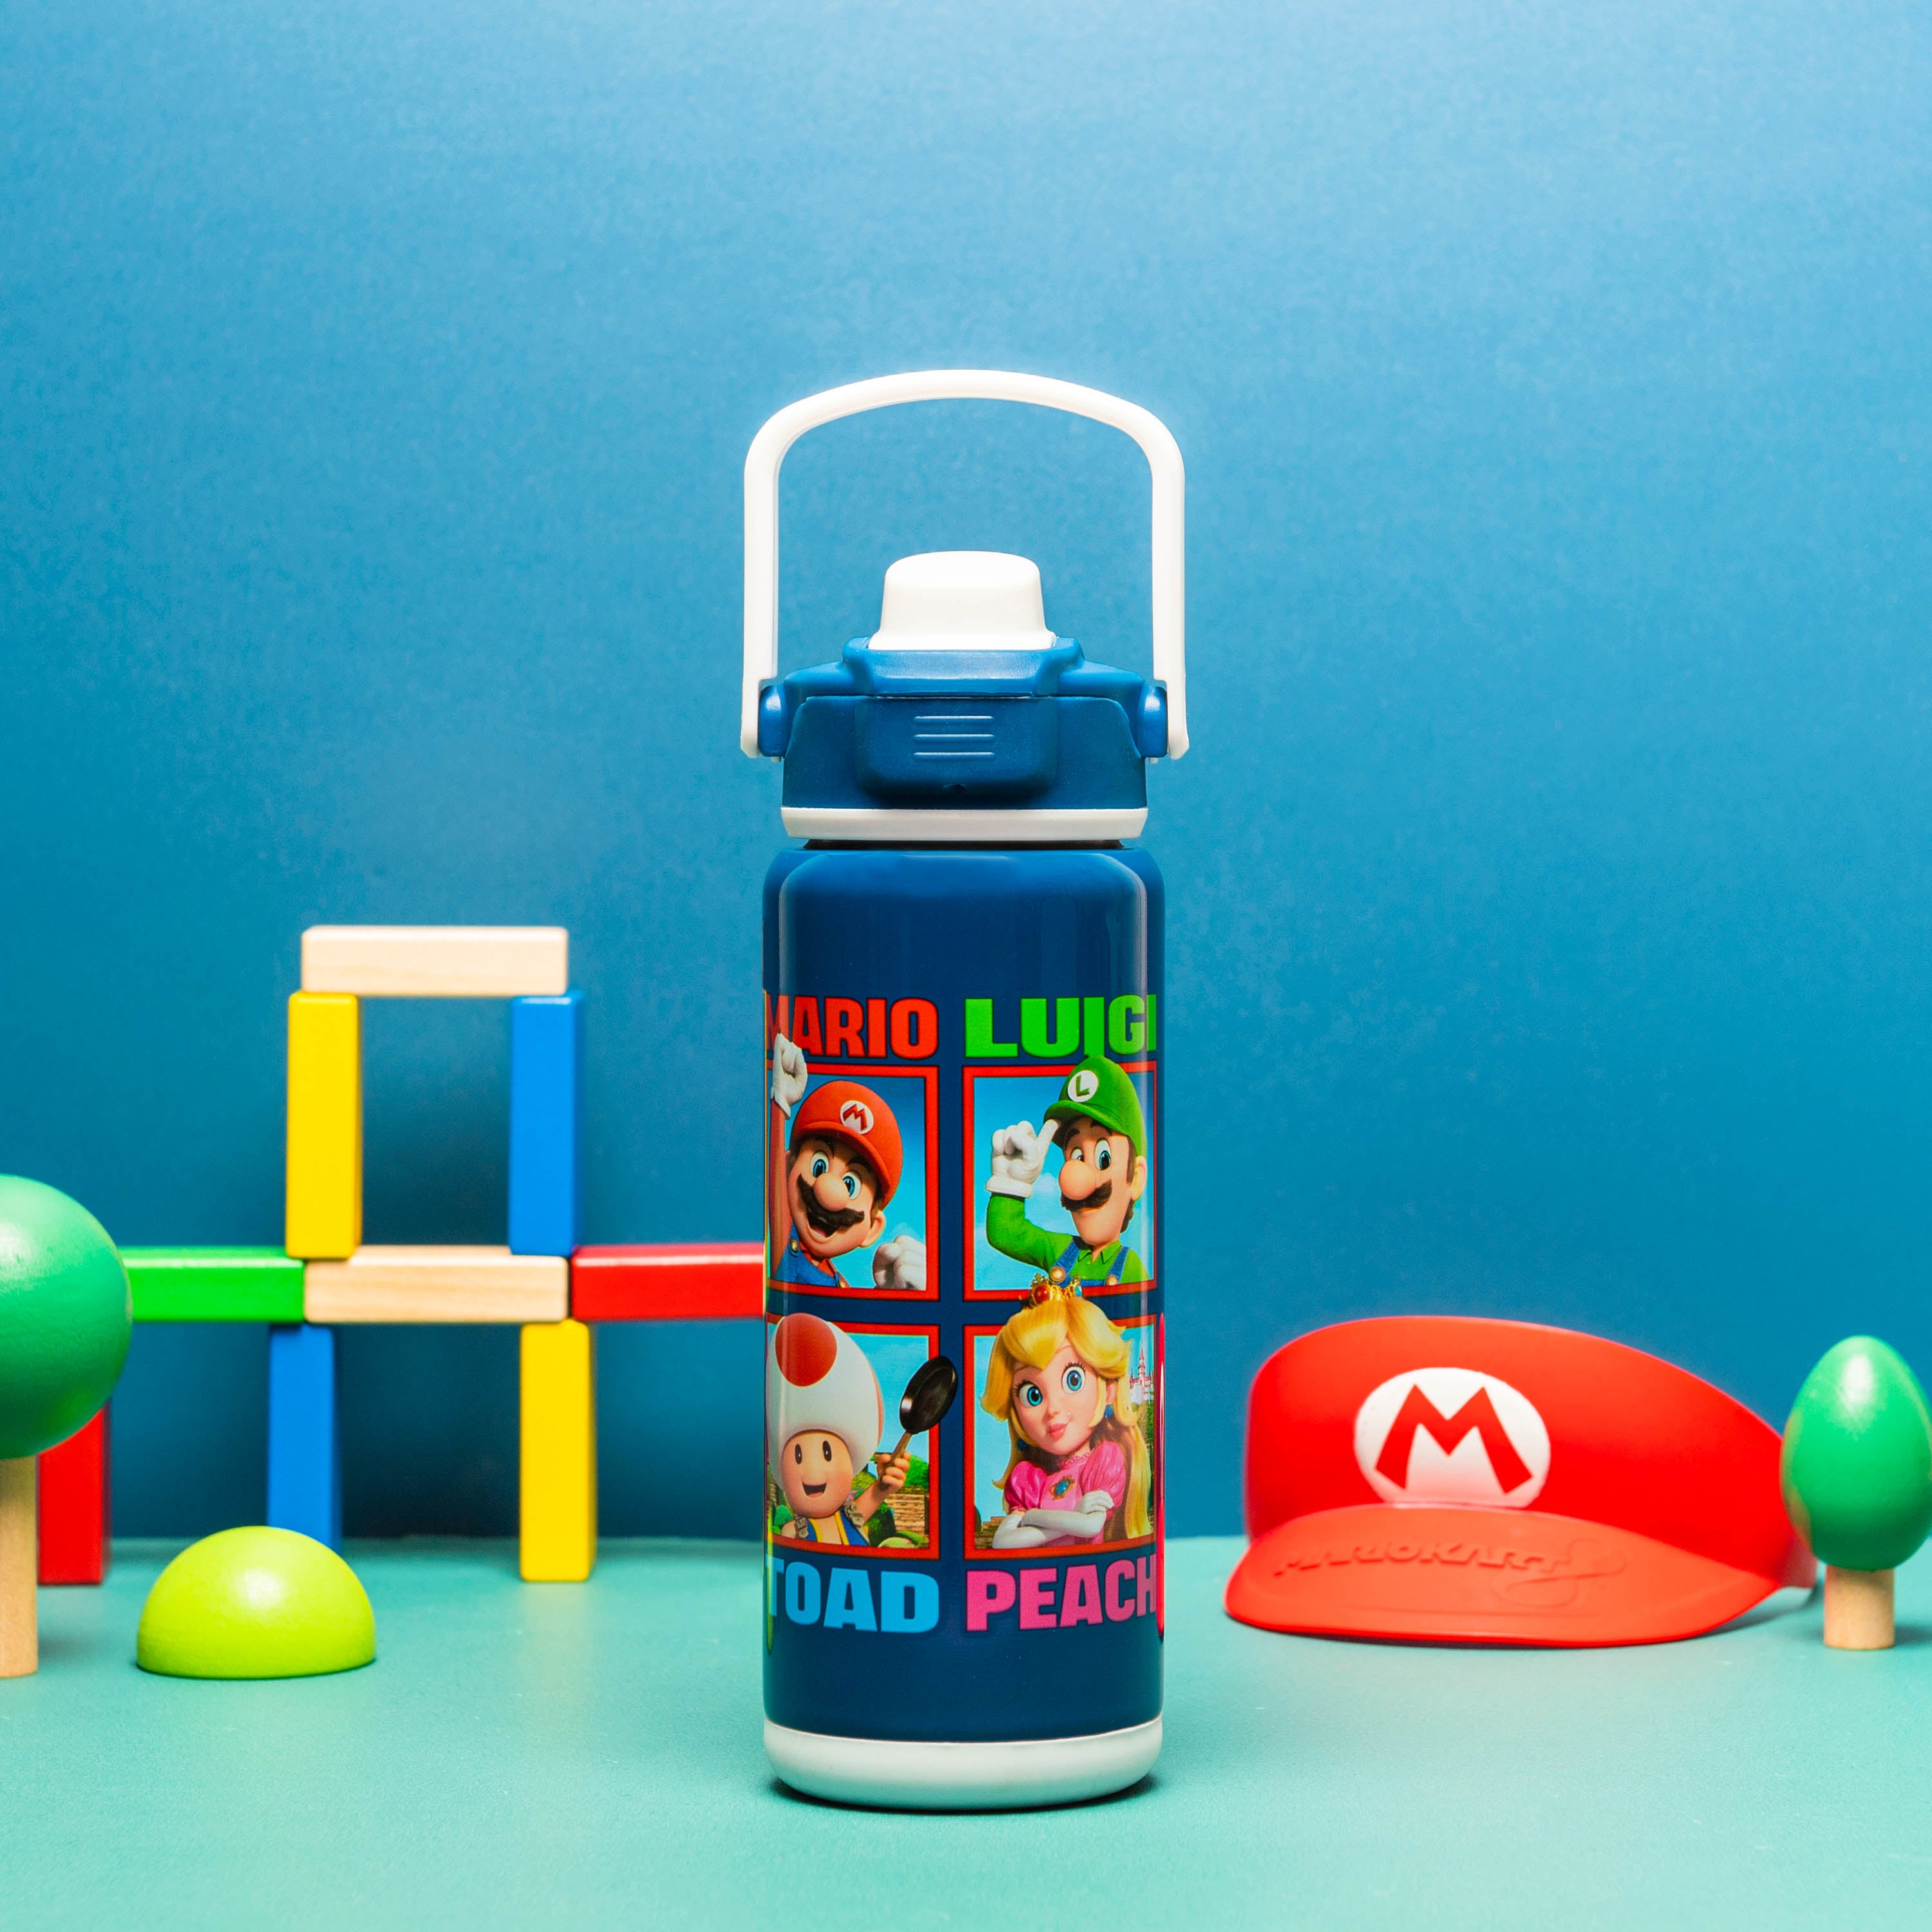 Nintendo Super Mario Bros stainless steel thermos mug 380ml